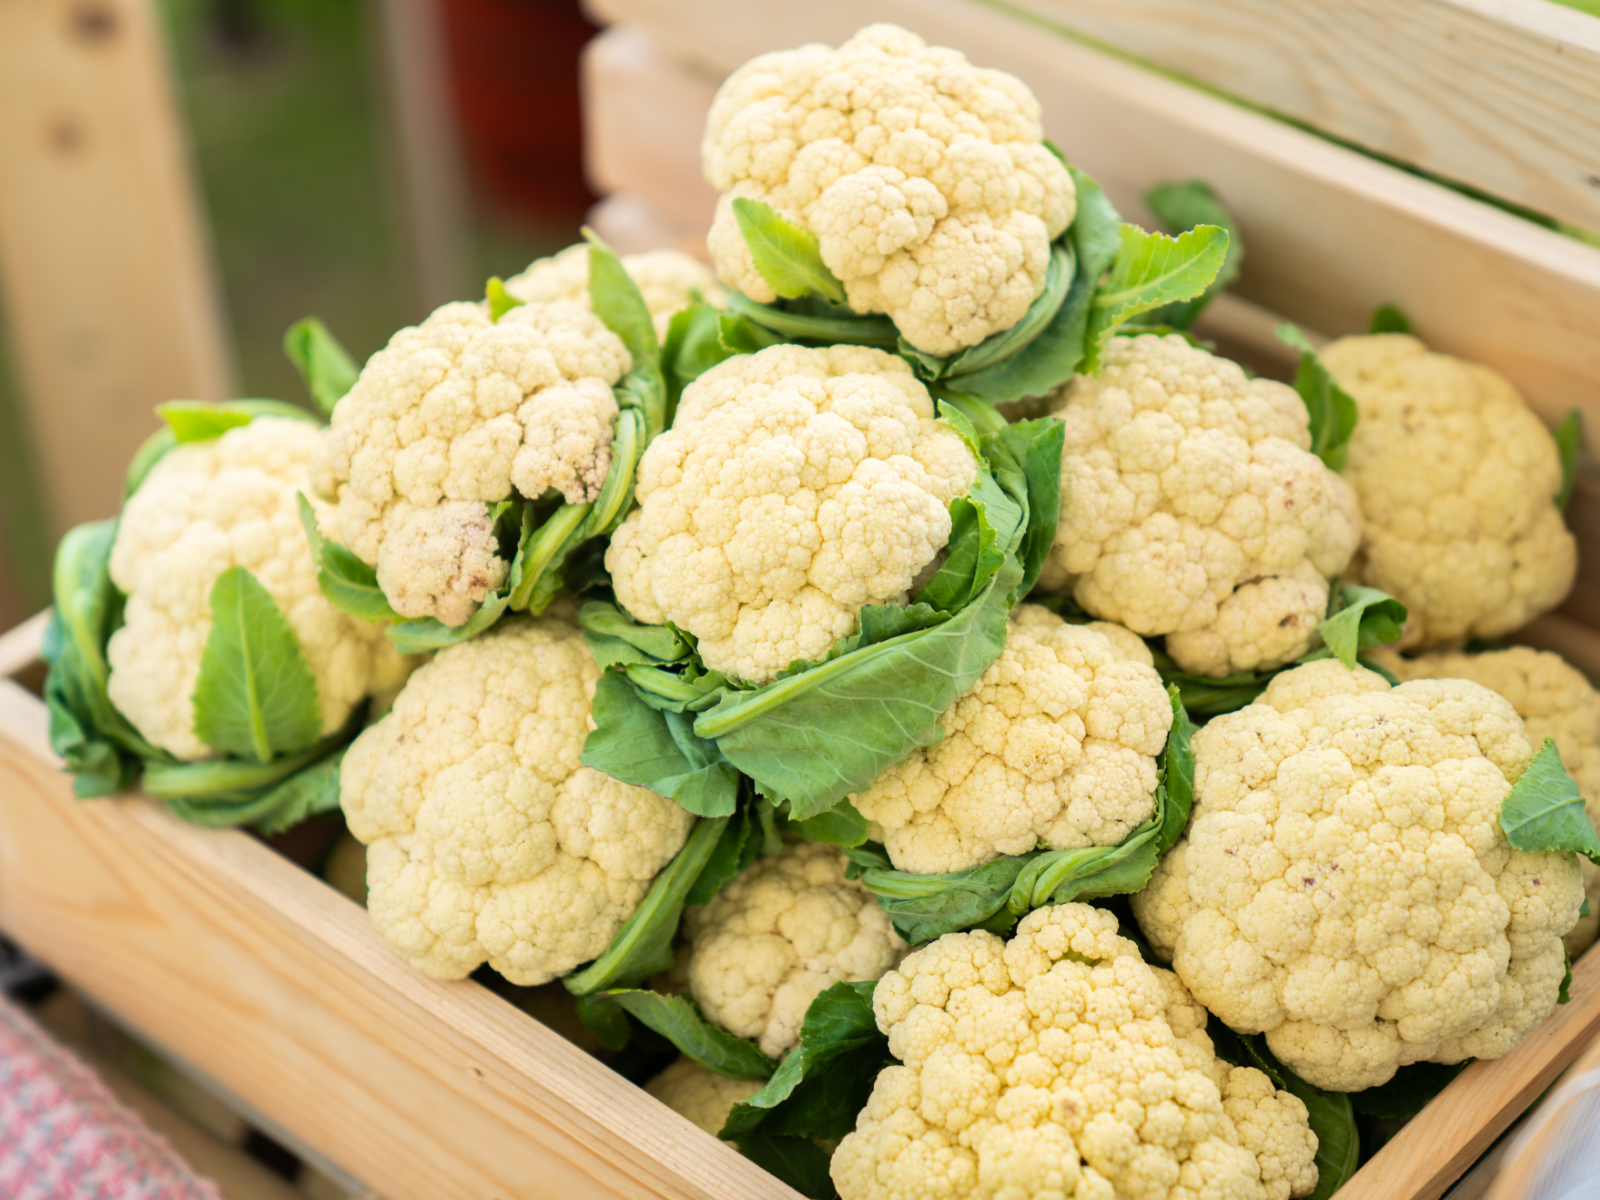 cauliflower heads in a basket